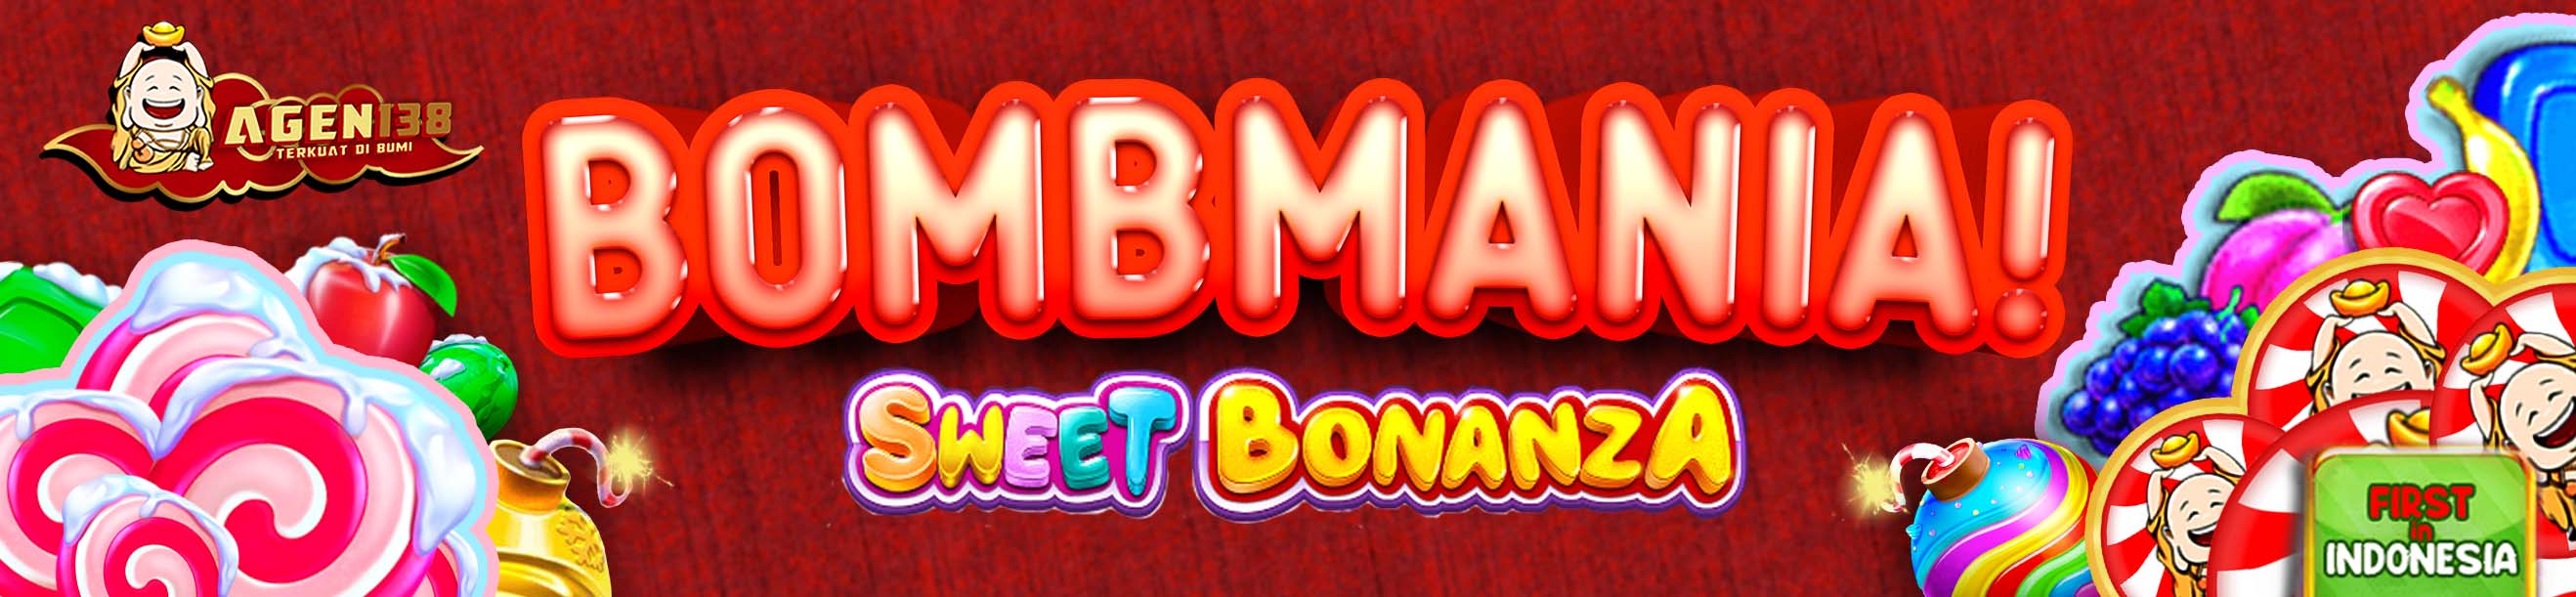 bombmania agen138